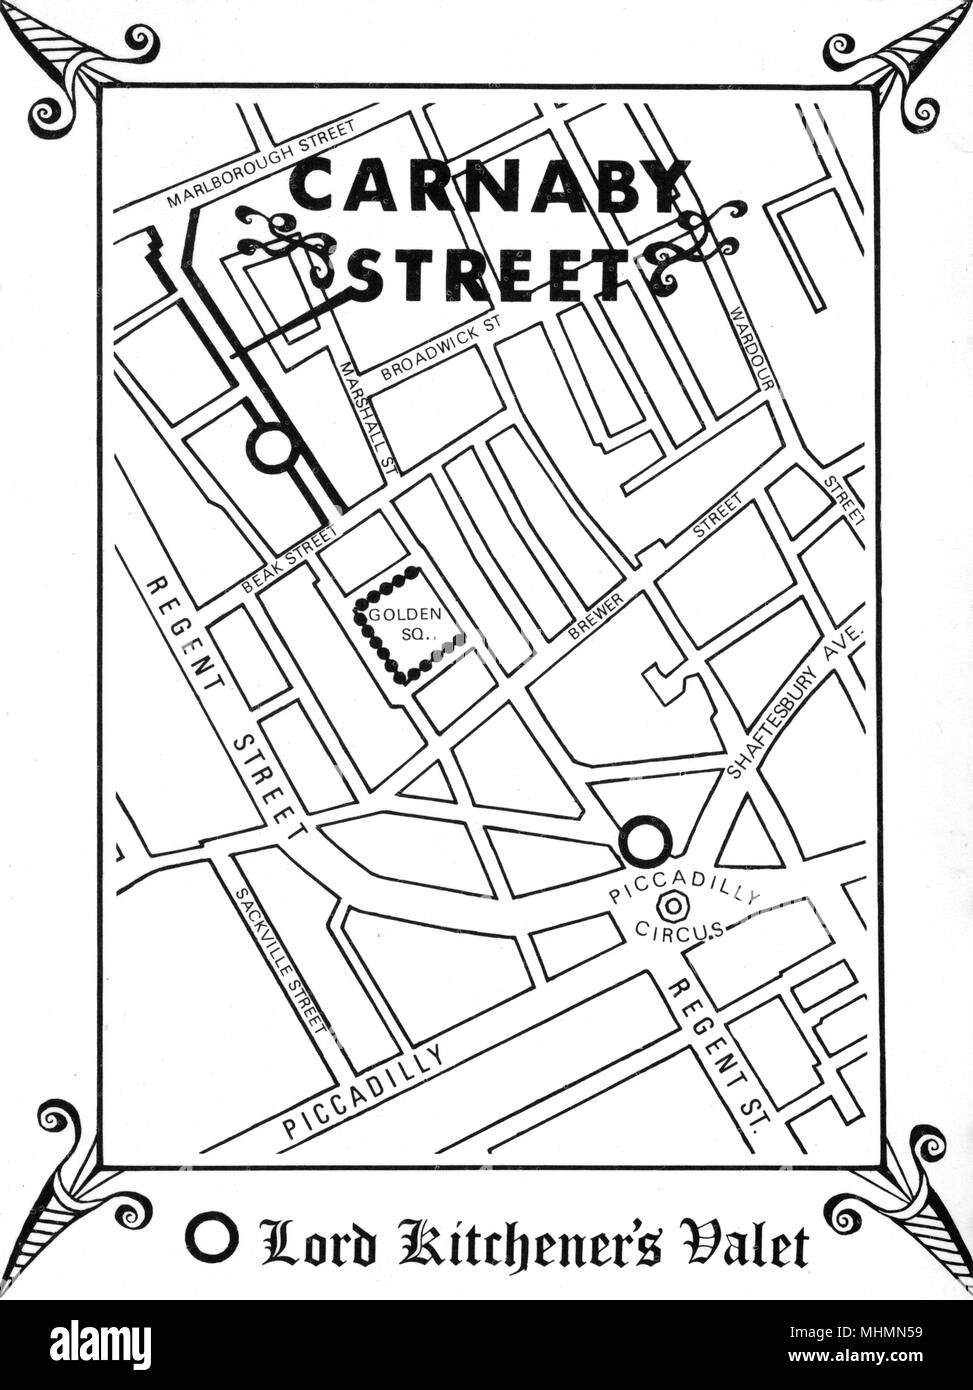 Mappa che mostra la posizione di epicentro degli anni sessanta cool, Carnaby Street, nel centro di Londra, come diretto da uno dei principali boutiques maschio, Lord Kitchener's valet. Data: 1966 Foto Stock